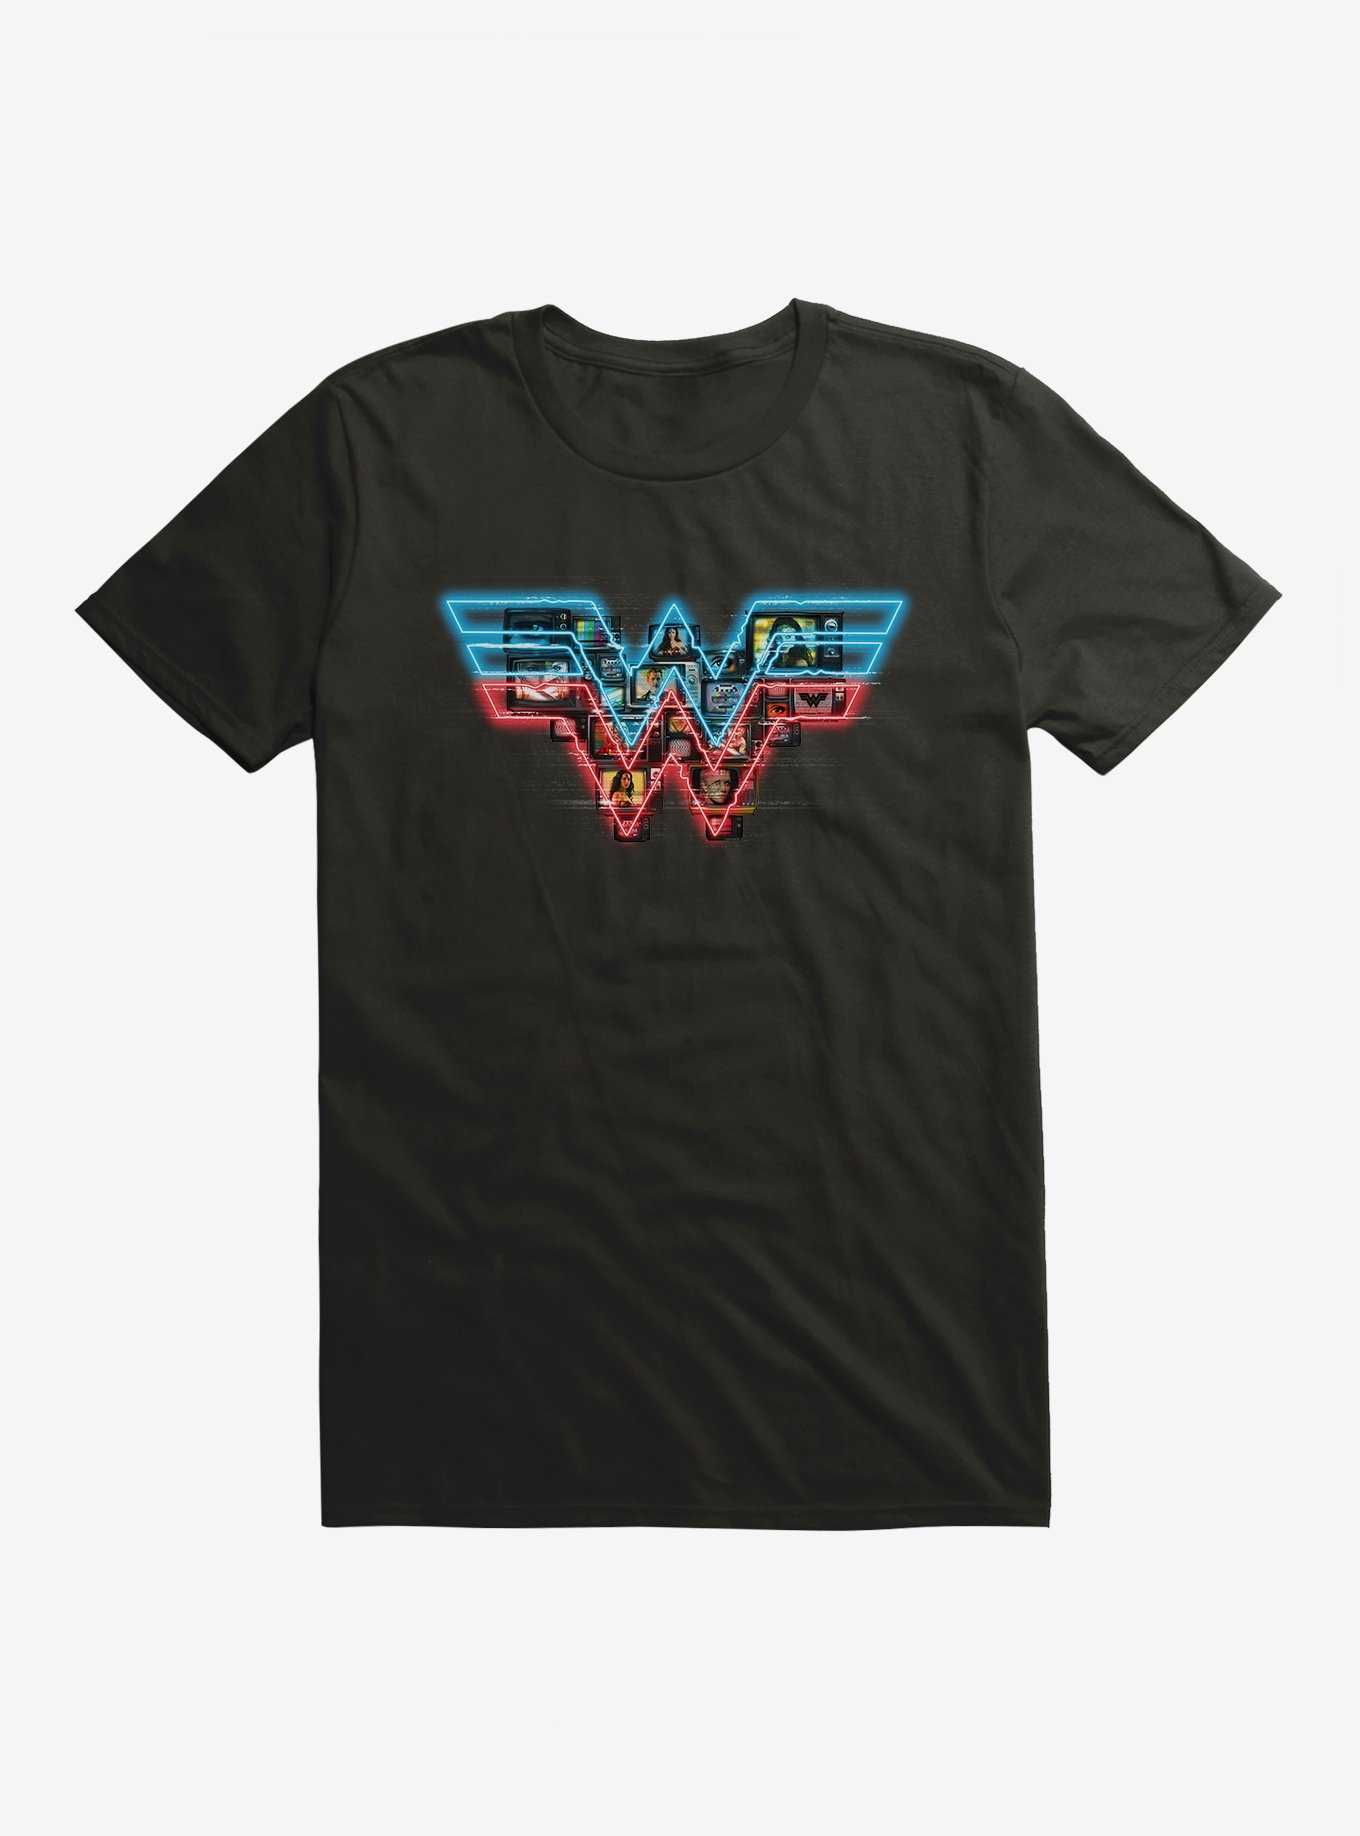 DC Comics Wonder Woman 1984 TV Logo T-Shirt, , hi-res